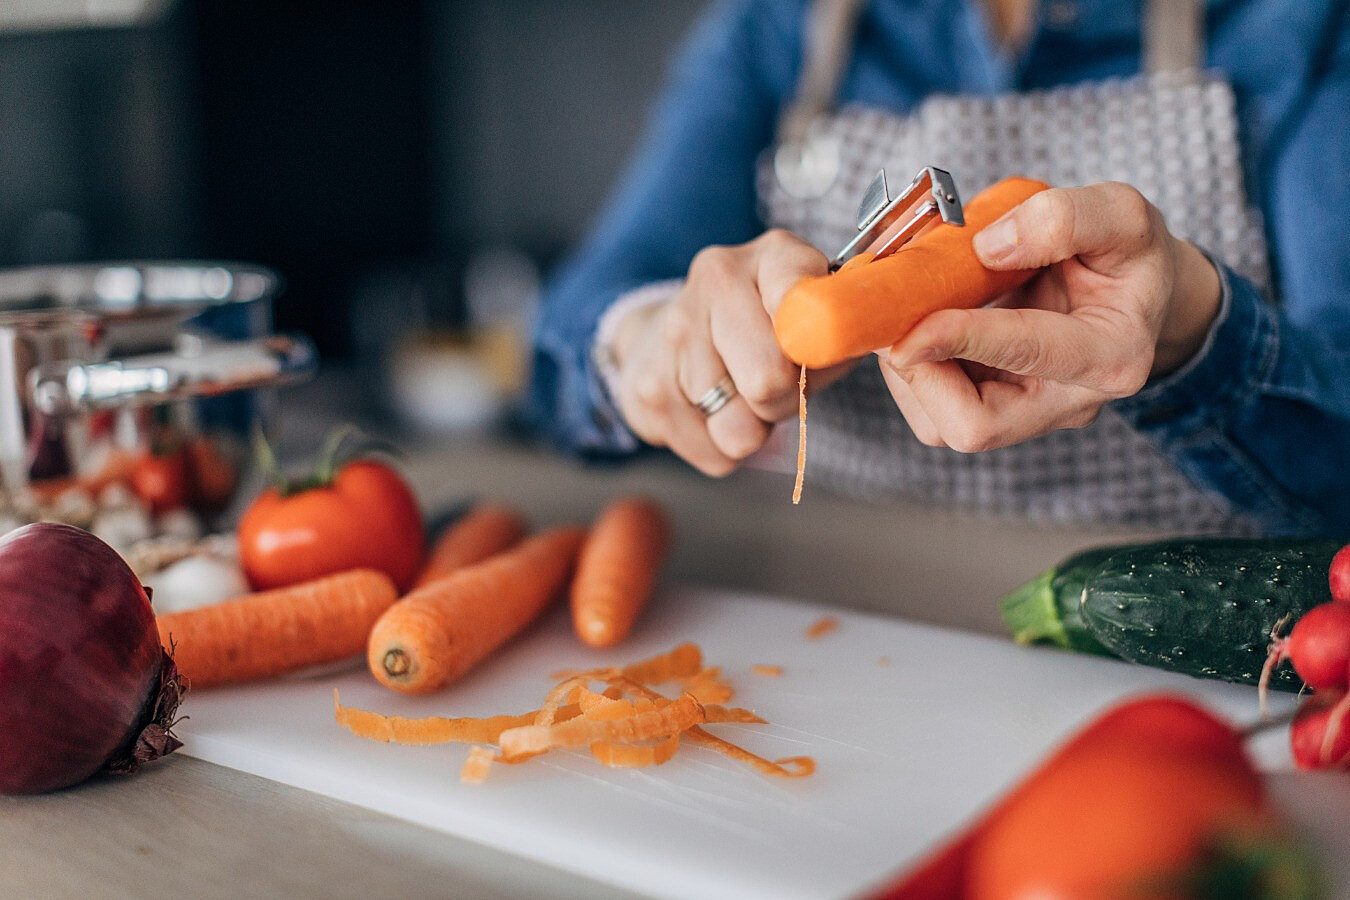 Что будет, если есть морковь каждый день? Польза и вред овоща. Мнение специалистов